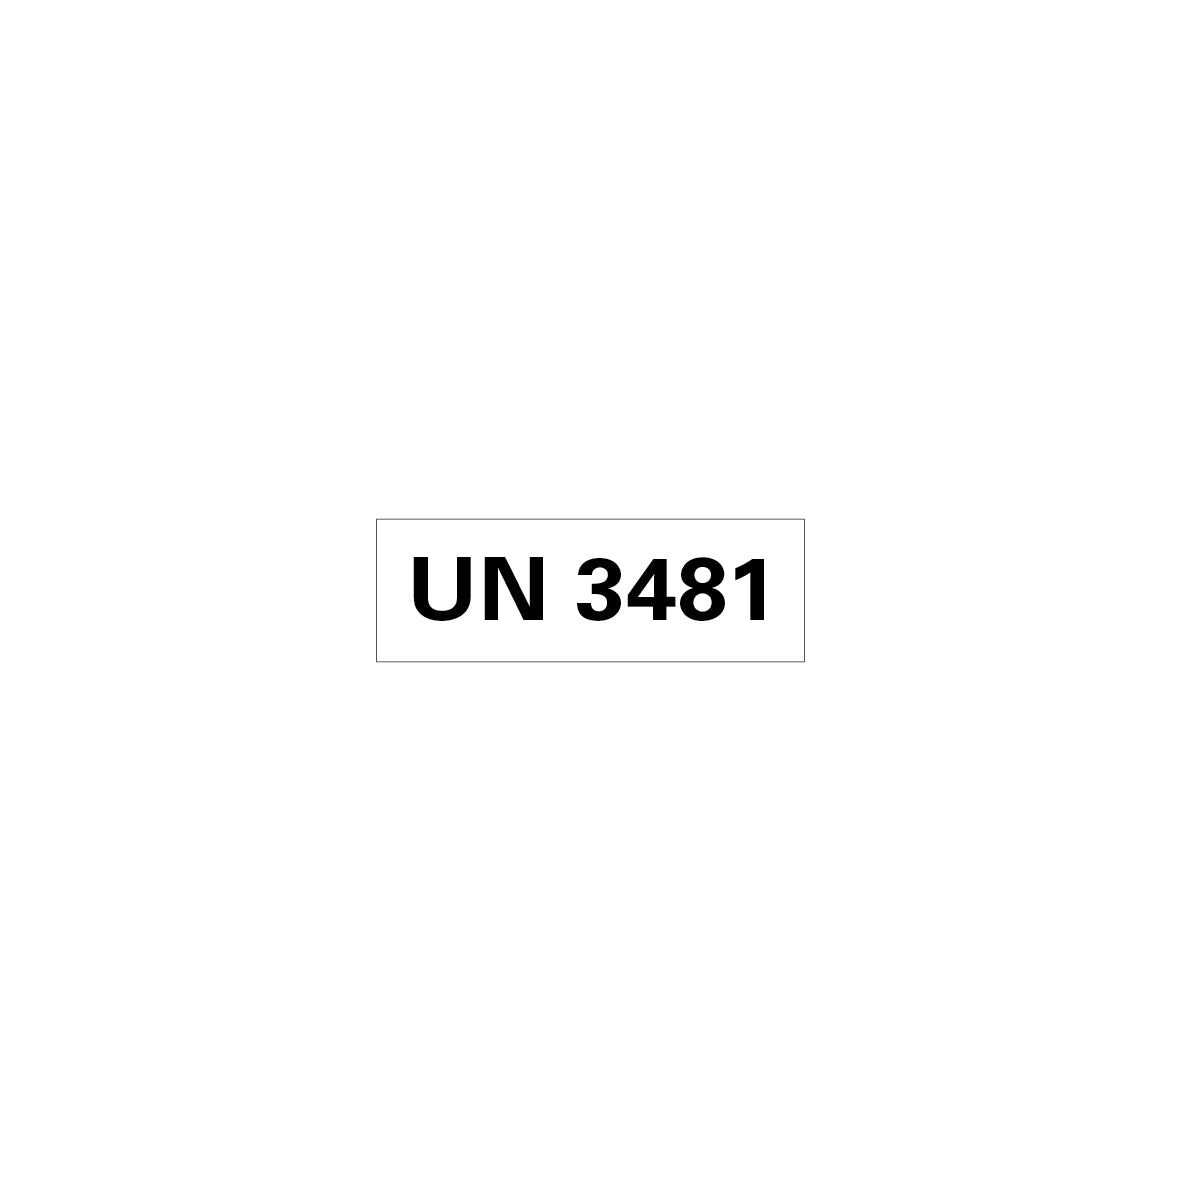 Gefahrgut UN, 5.0160.1, 150 x 50 mm, Stk., UN 3481 (Lithium-Ionen-Batteren in Ausrüstung), auf Bogen, VE 10 Stk.